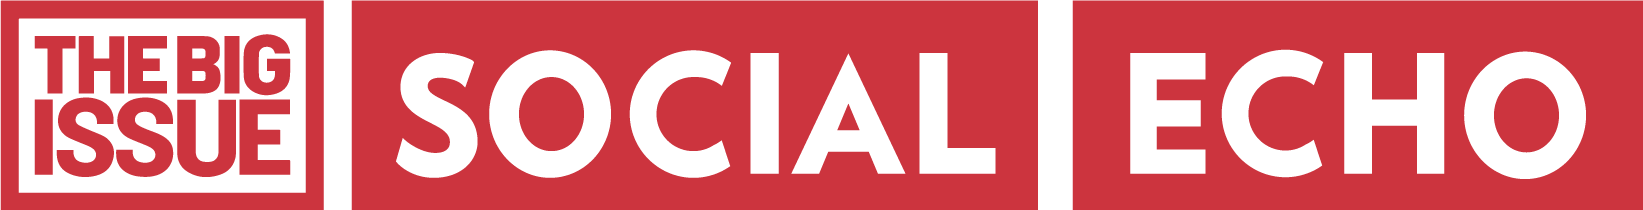 big-issue-social-echo-logo